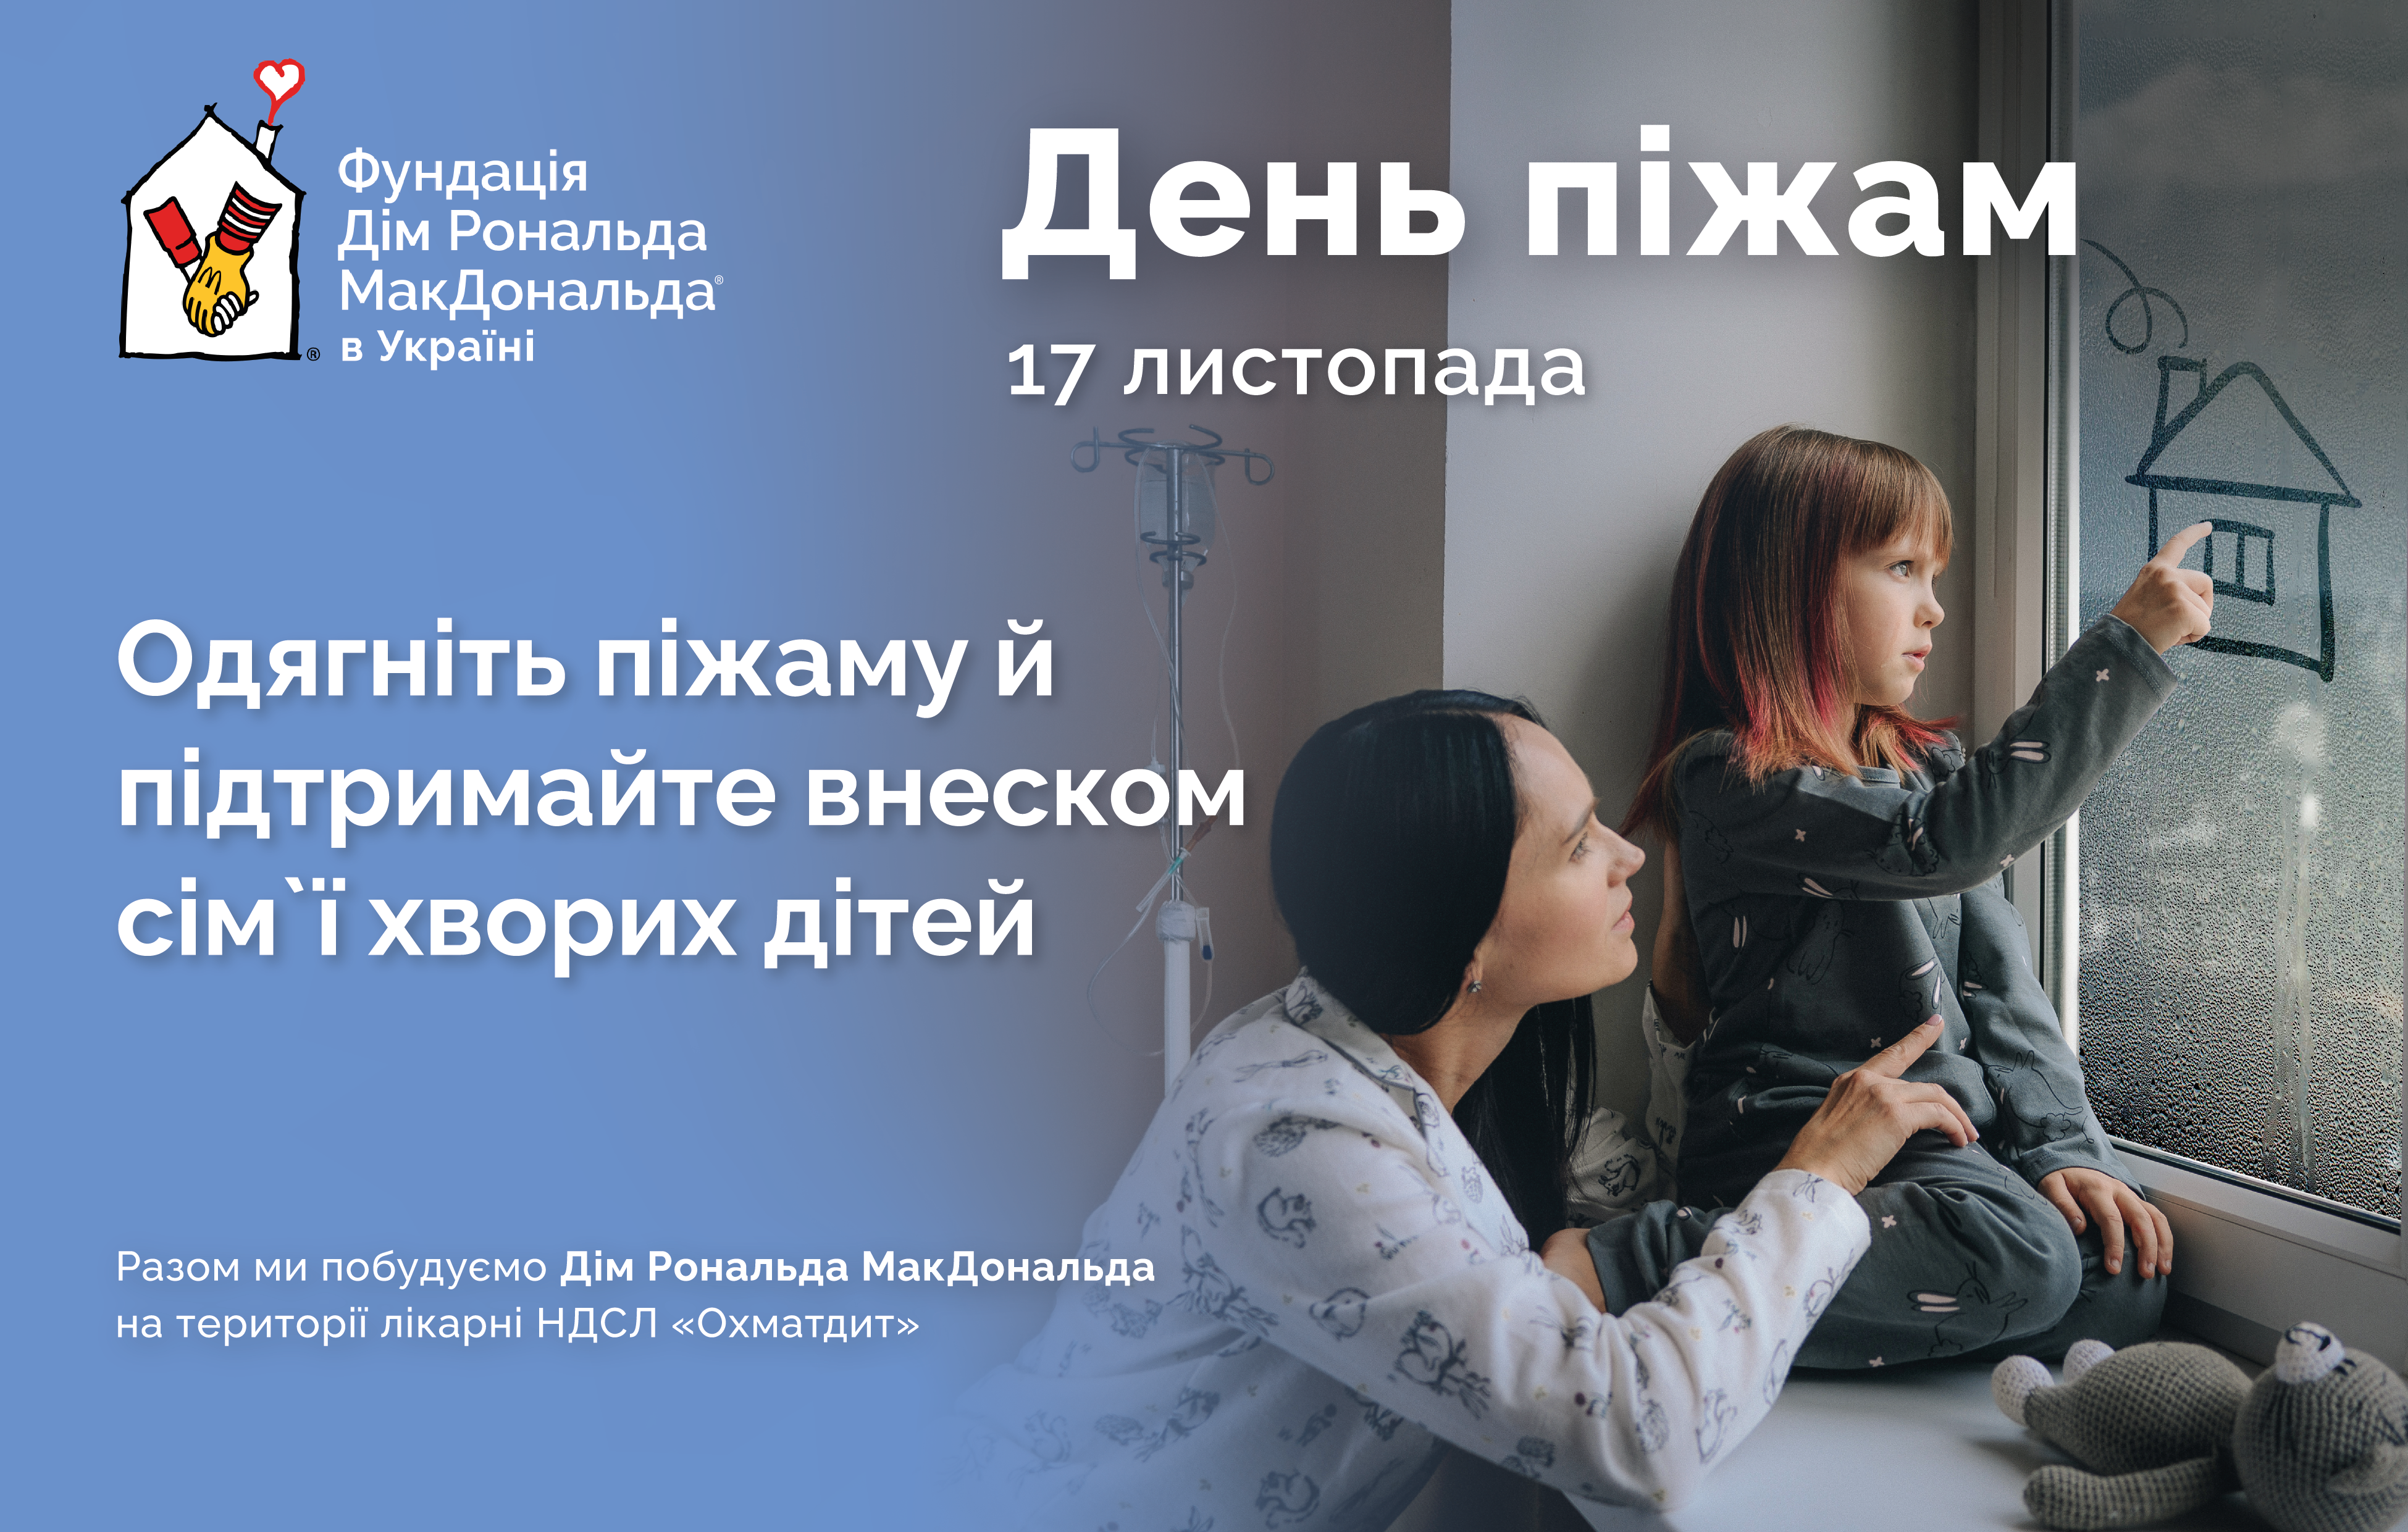 🛌 В Україні 17 листопада відбудеться благодійний День піжам: як долучитись